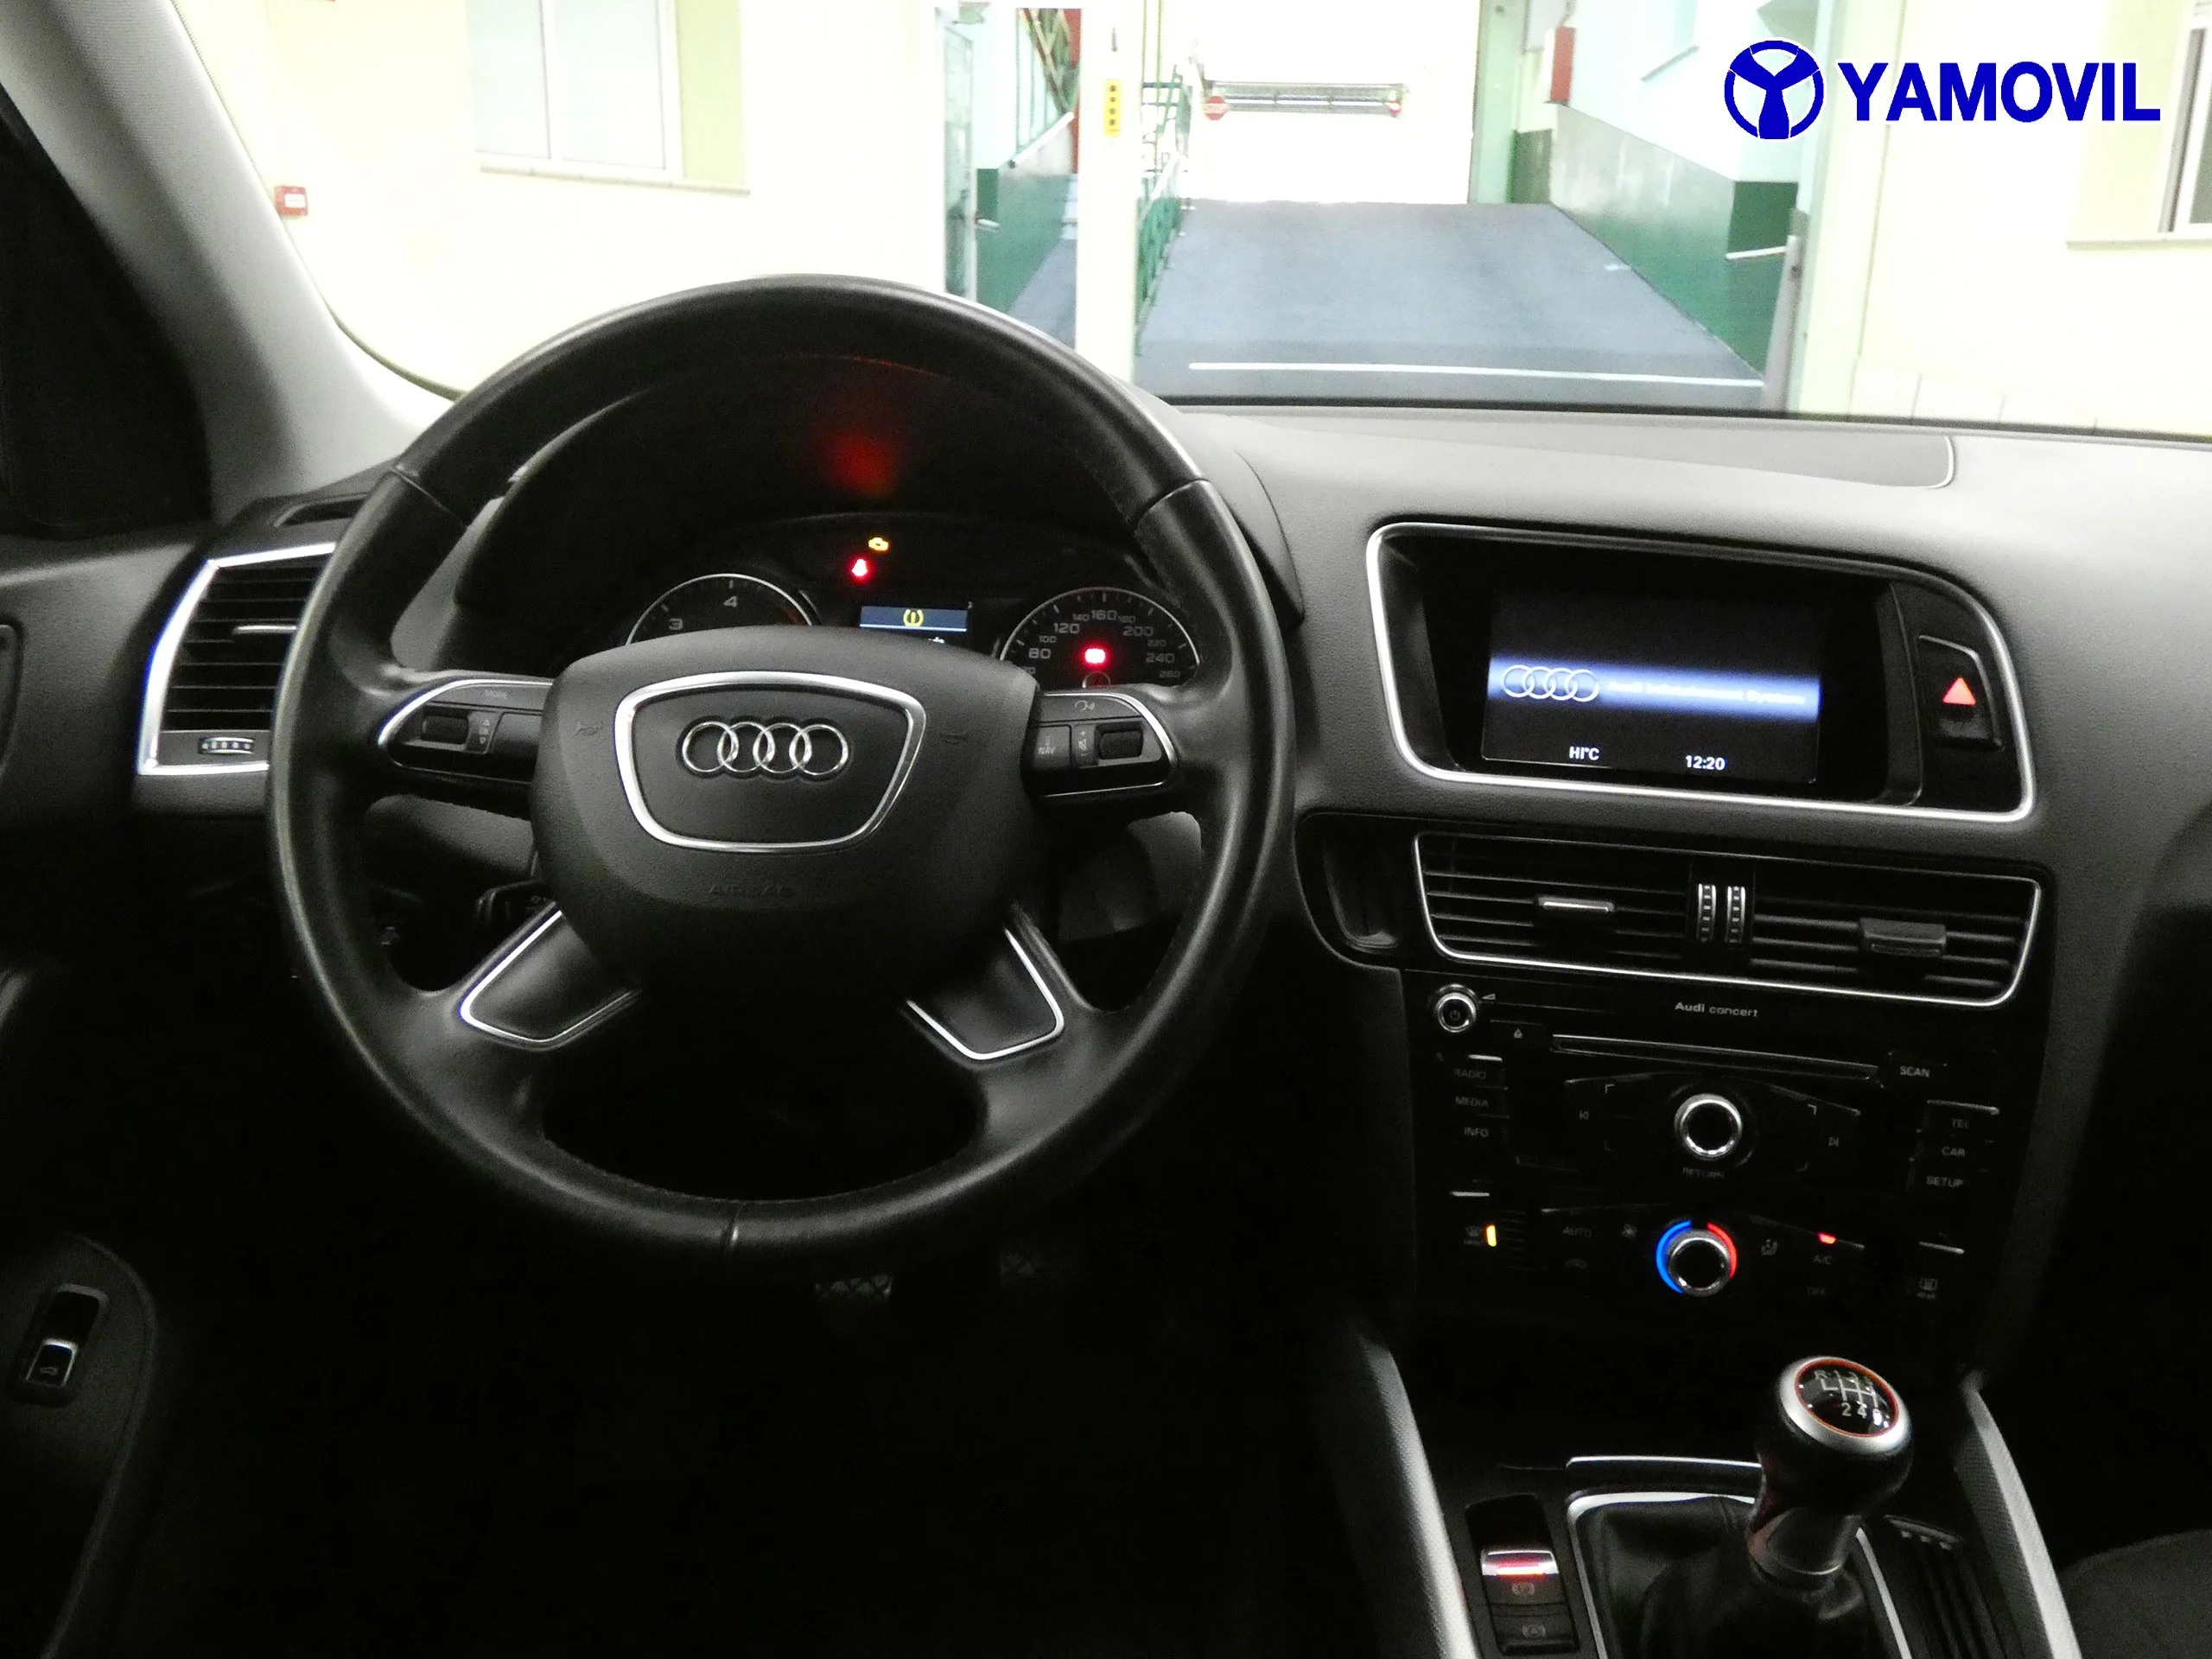 Audi Q5 2.0 TDI ULTRA ADVANCE EDITION 5P - Foto 17